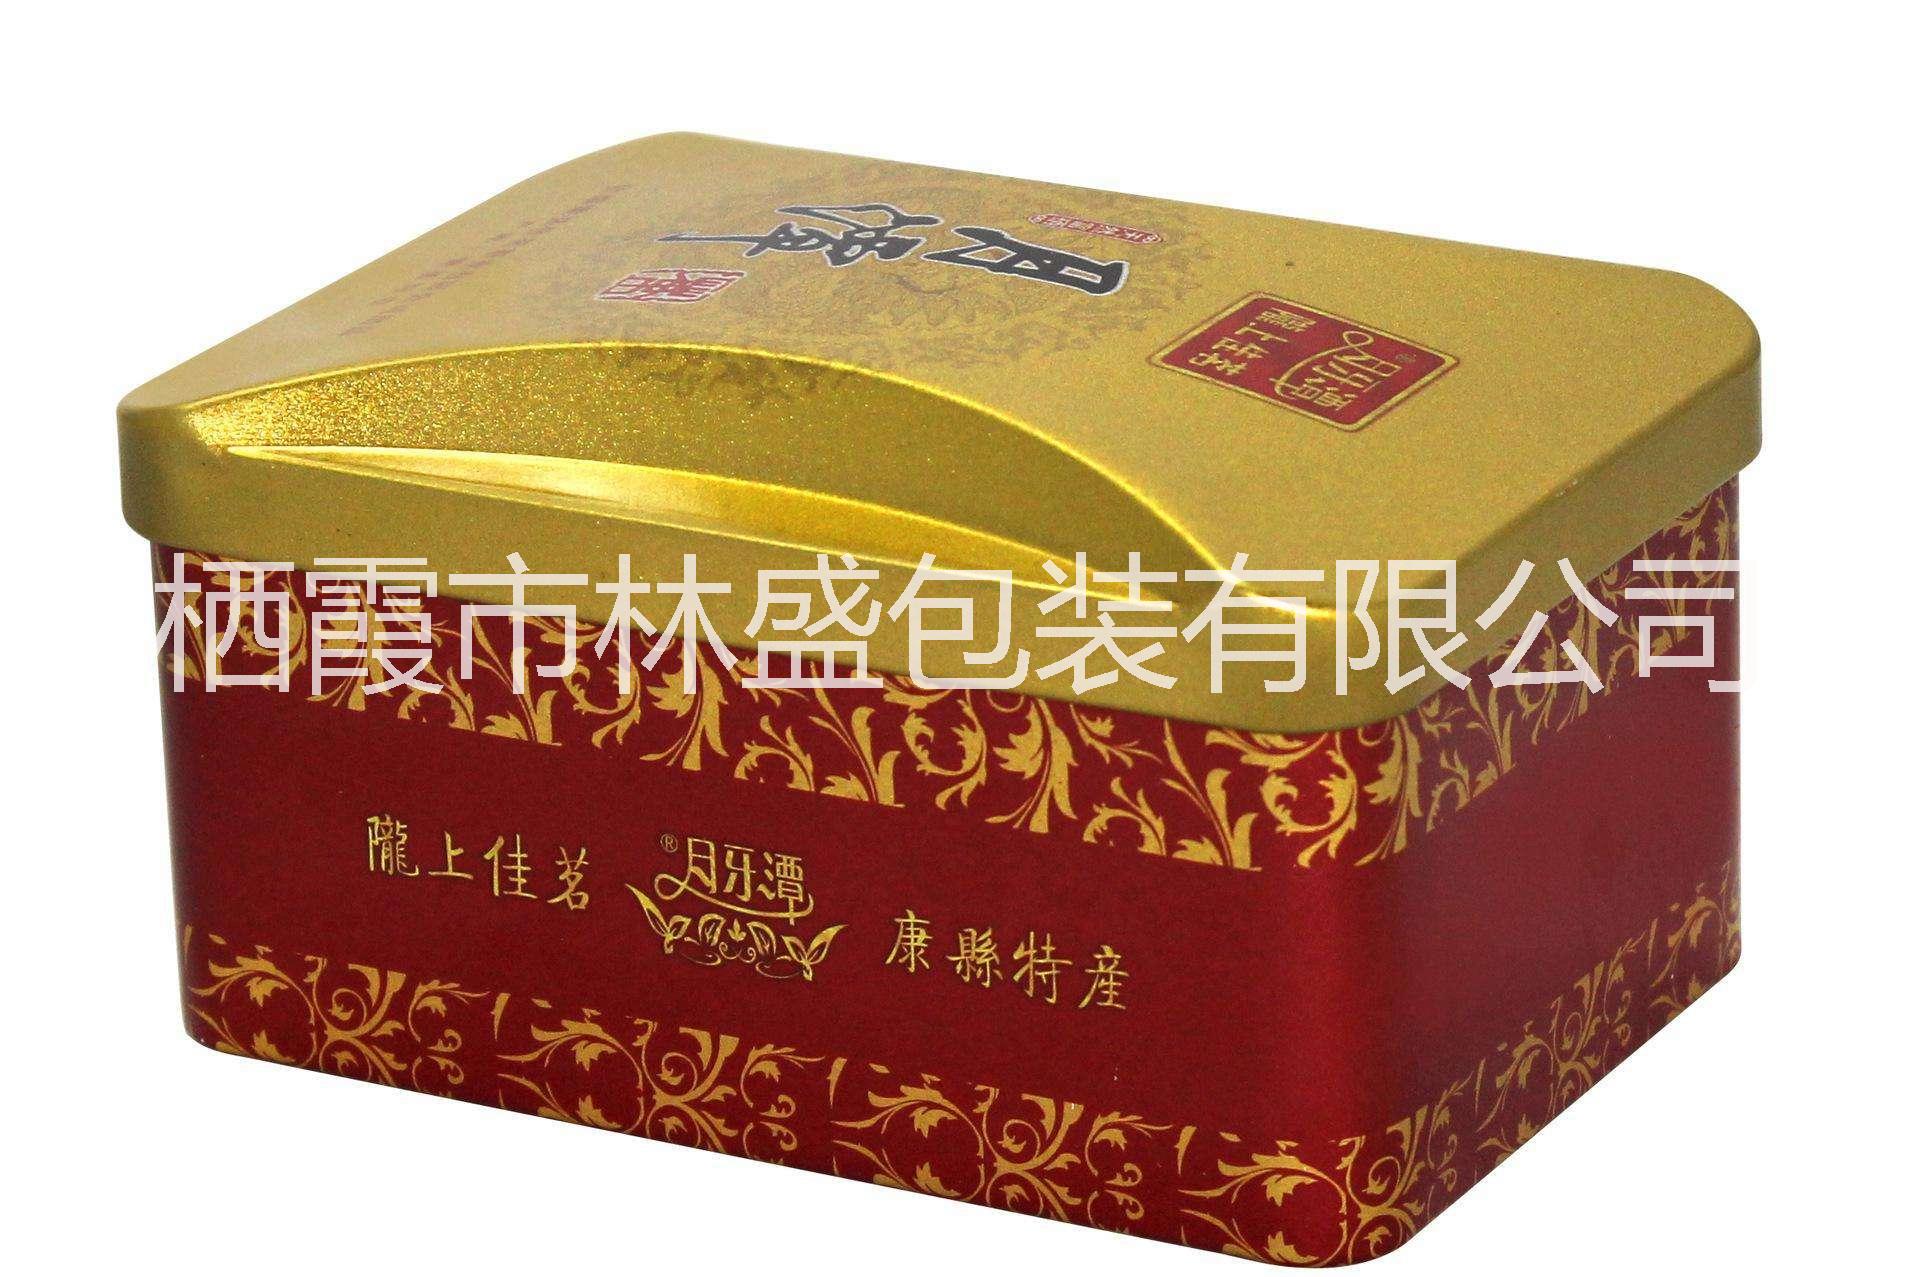 定制茶叶盒 烟台茶叶盒厂家 烟台定制茶叶盒 茶叶盒供应 茶叶盒厂家 烟台盒子加工 烟台茶叶盒直销